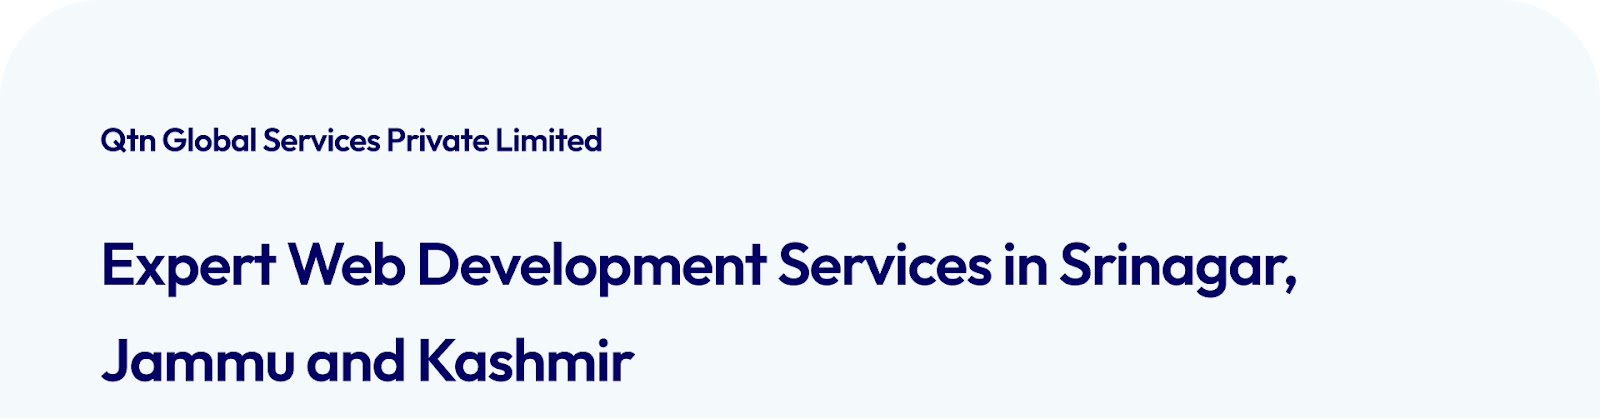 Expert Web Development Services in Srinagar, Jammu, and Kashmir 